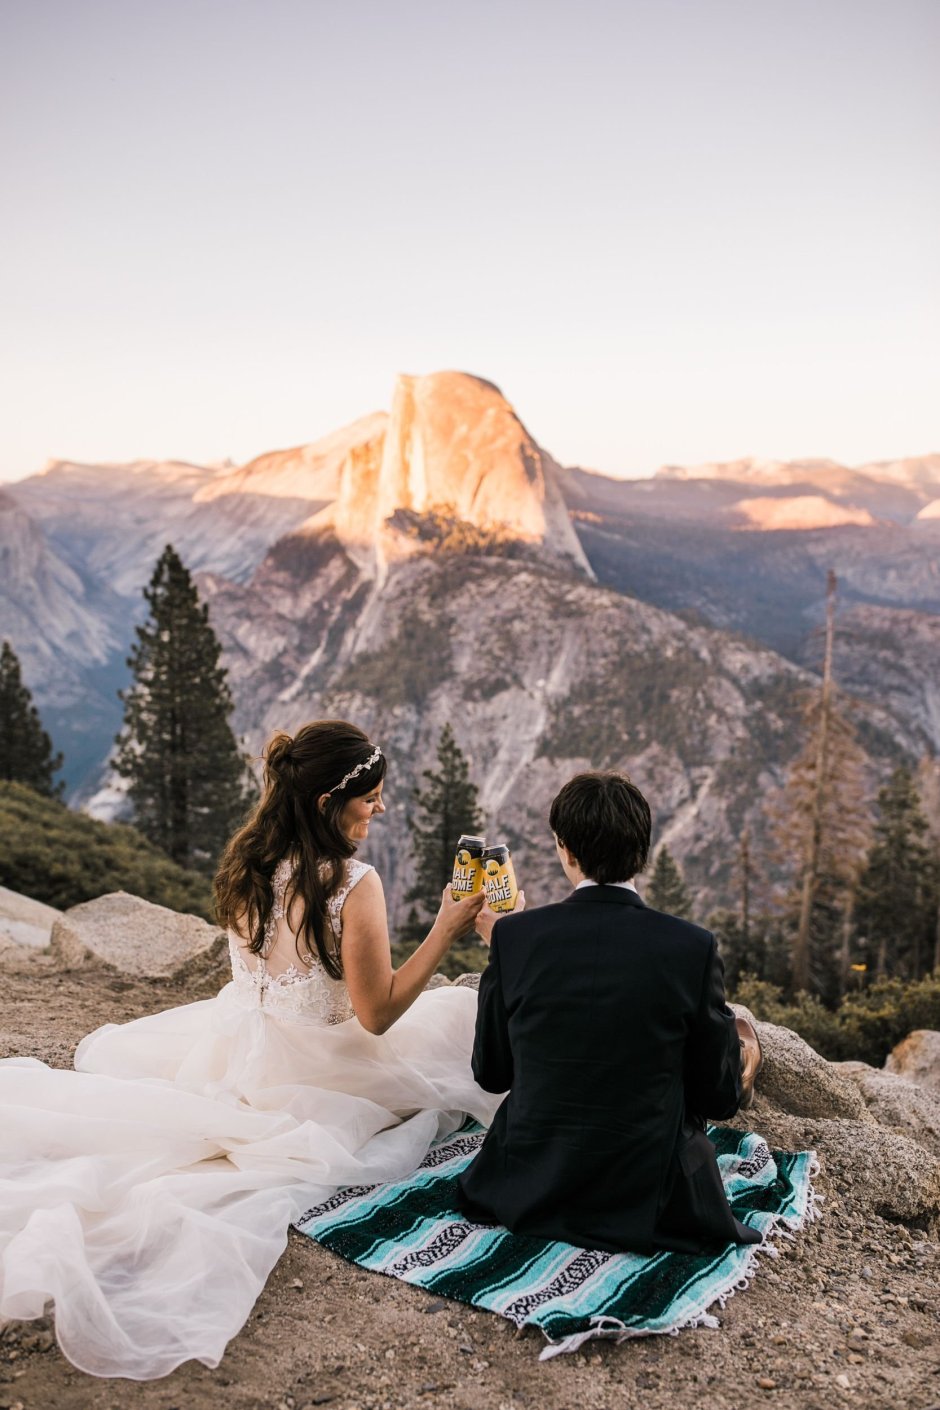 Церемония свадьбы в горах